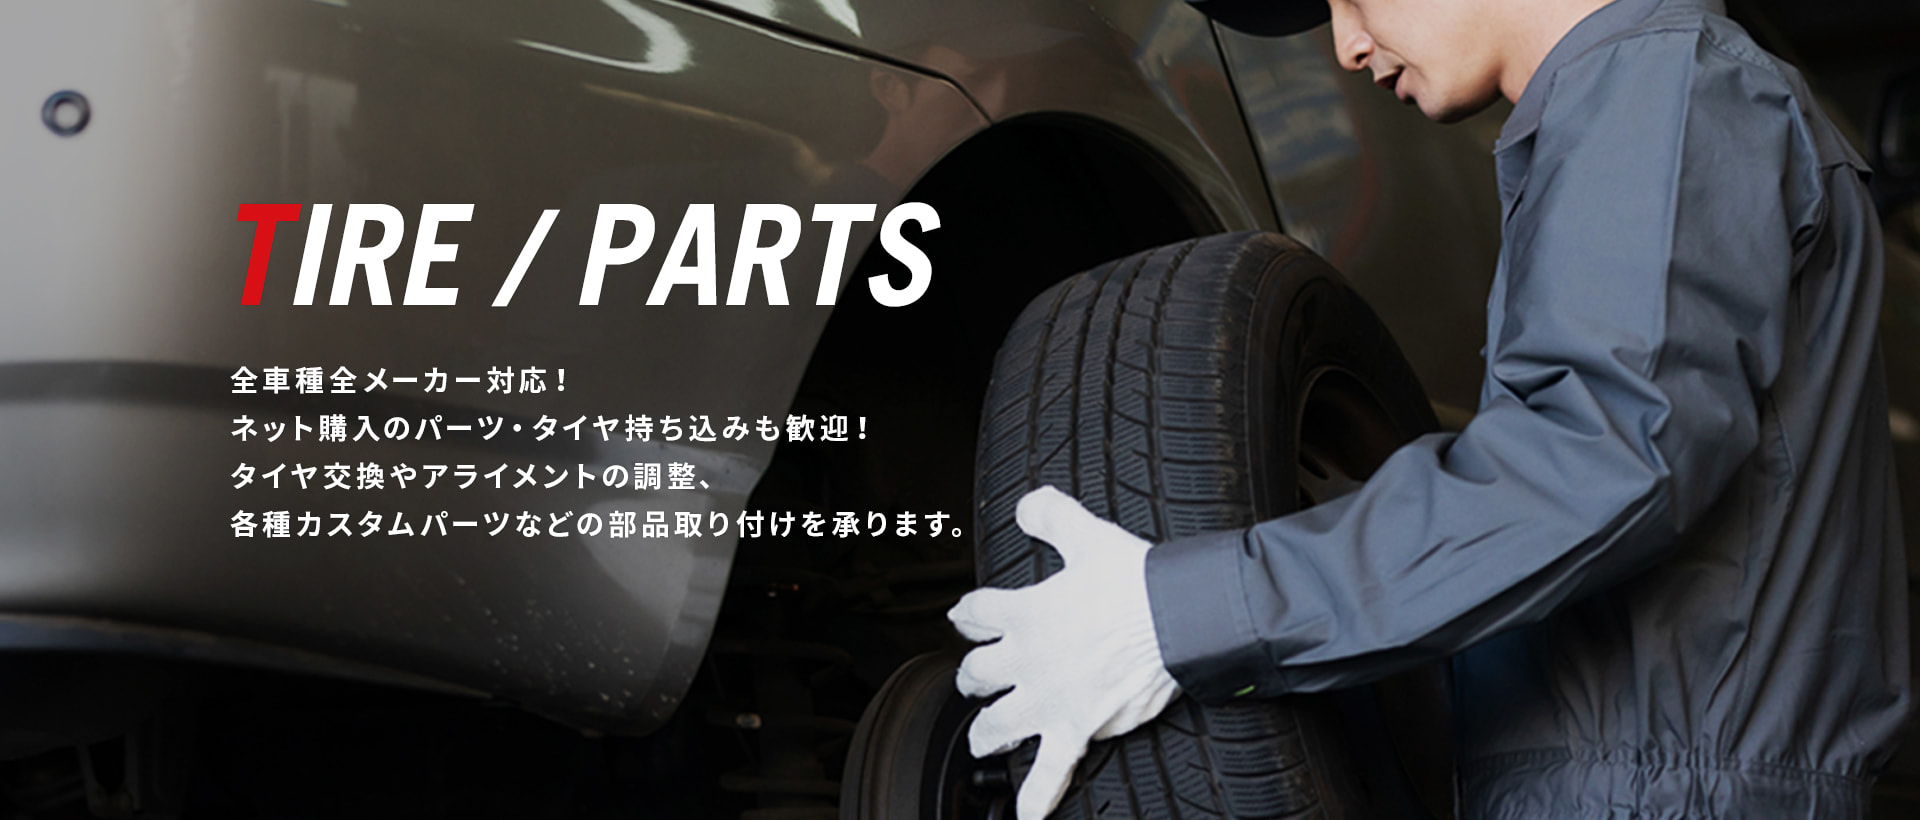 TIRE / PARTS 全車種全メーカー対応！ ネット購入のパーツ・タイヤ持ち込みも歓迎！ タイヤ交換やアライメントの調整、各種カスタムパーツなどの部品取り付けを承ります。